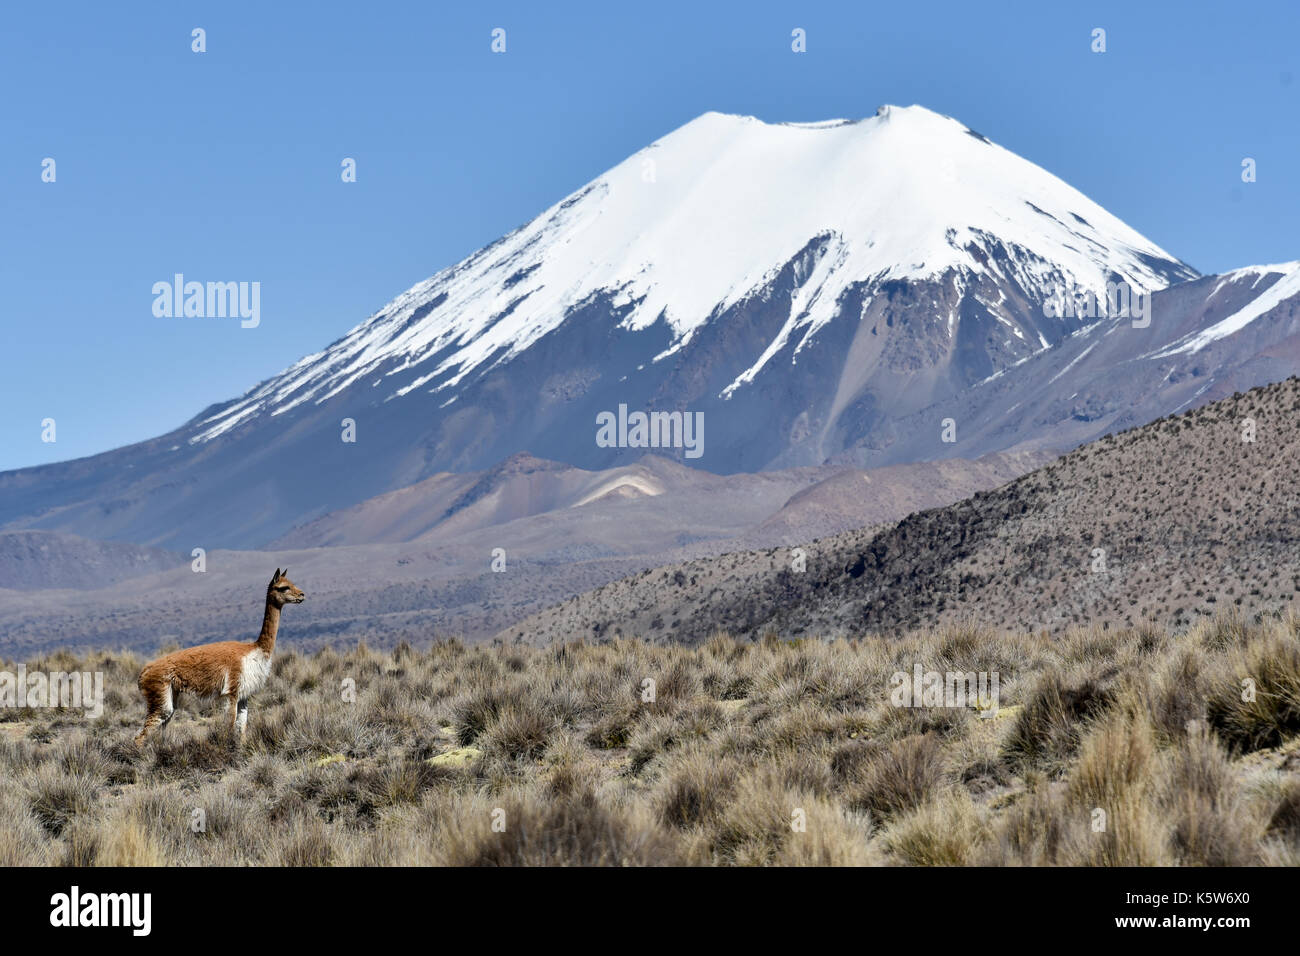 La neige a couvert les volcans Parinacota et Pomerape avec guanaco (Lama guanicoe), le parc national de Sajama bolivien, à la frontière de la Bolivie Chili Banque D'Images